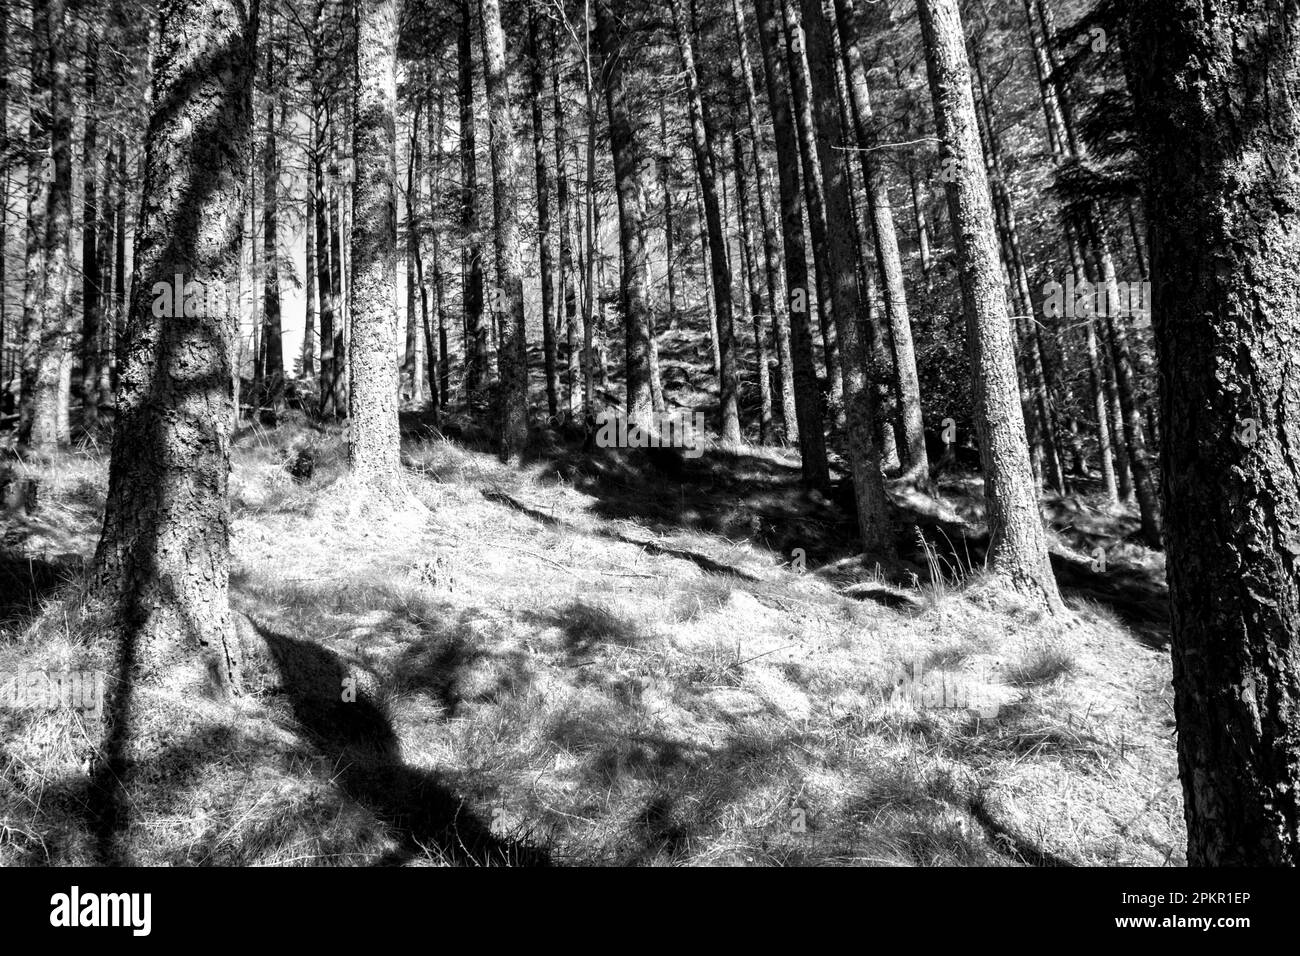 Ein kleiner Wald aus Kiefern in Schwarz und Weiß, geschützt in Glen Coe in den schottischen Highlands. Stockfoto